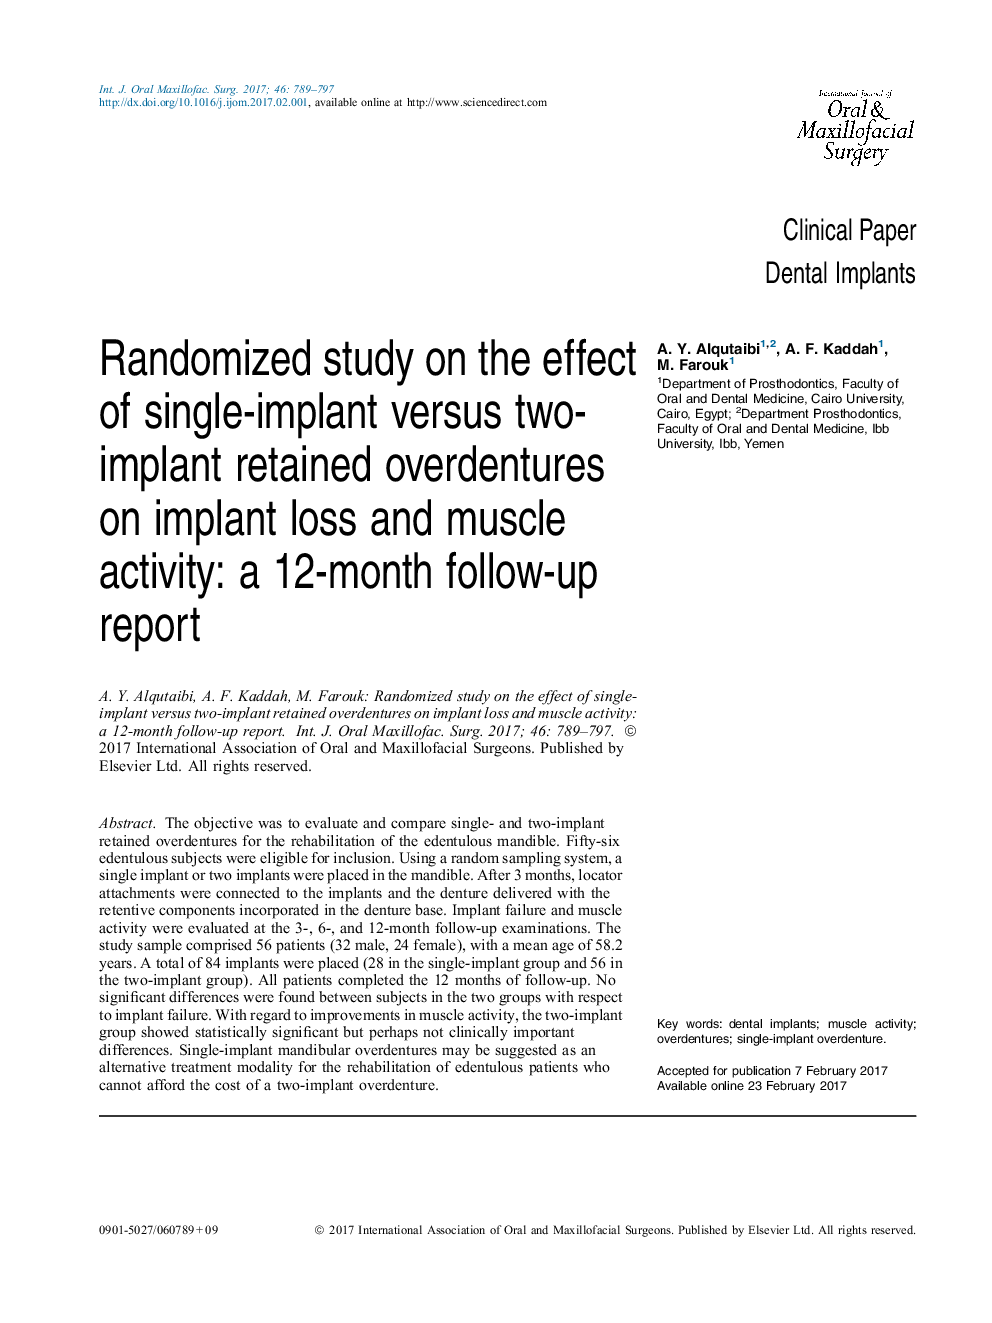 بررسی تصادفی اثر ادرار باقی مانده از تک ایمپلنت در برابر دو پروتز نگهدارنده بر روی کاهش ایمپلنت و فعالیت عضلانی: یک گزارش پیگیری 12 ماهه 